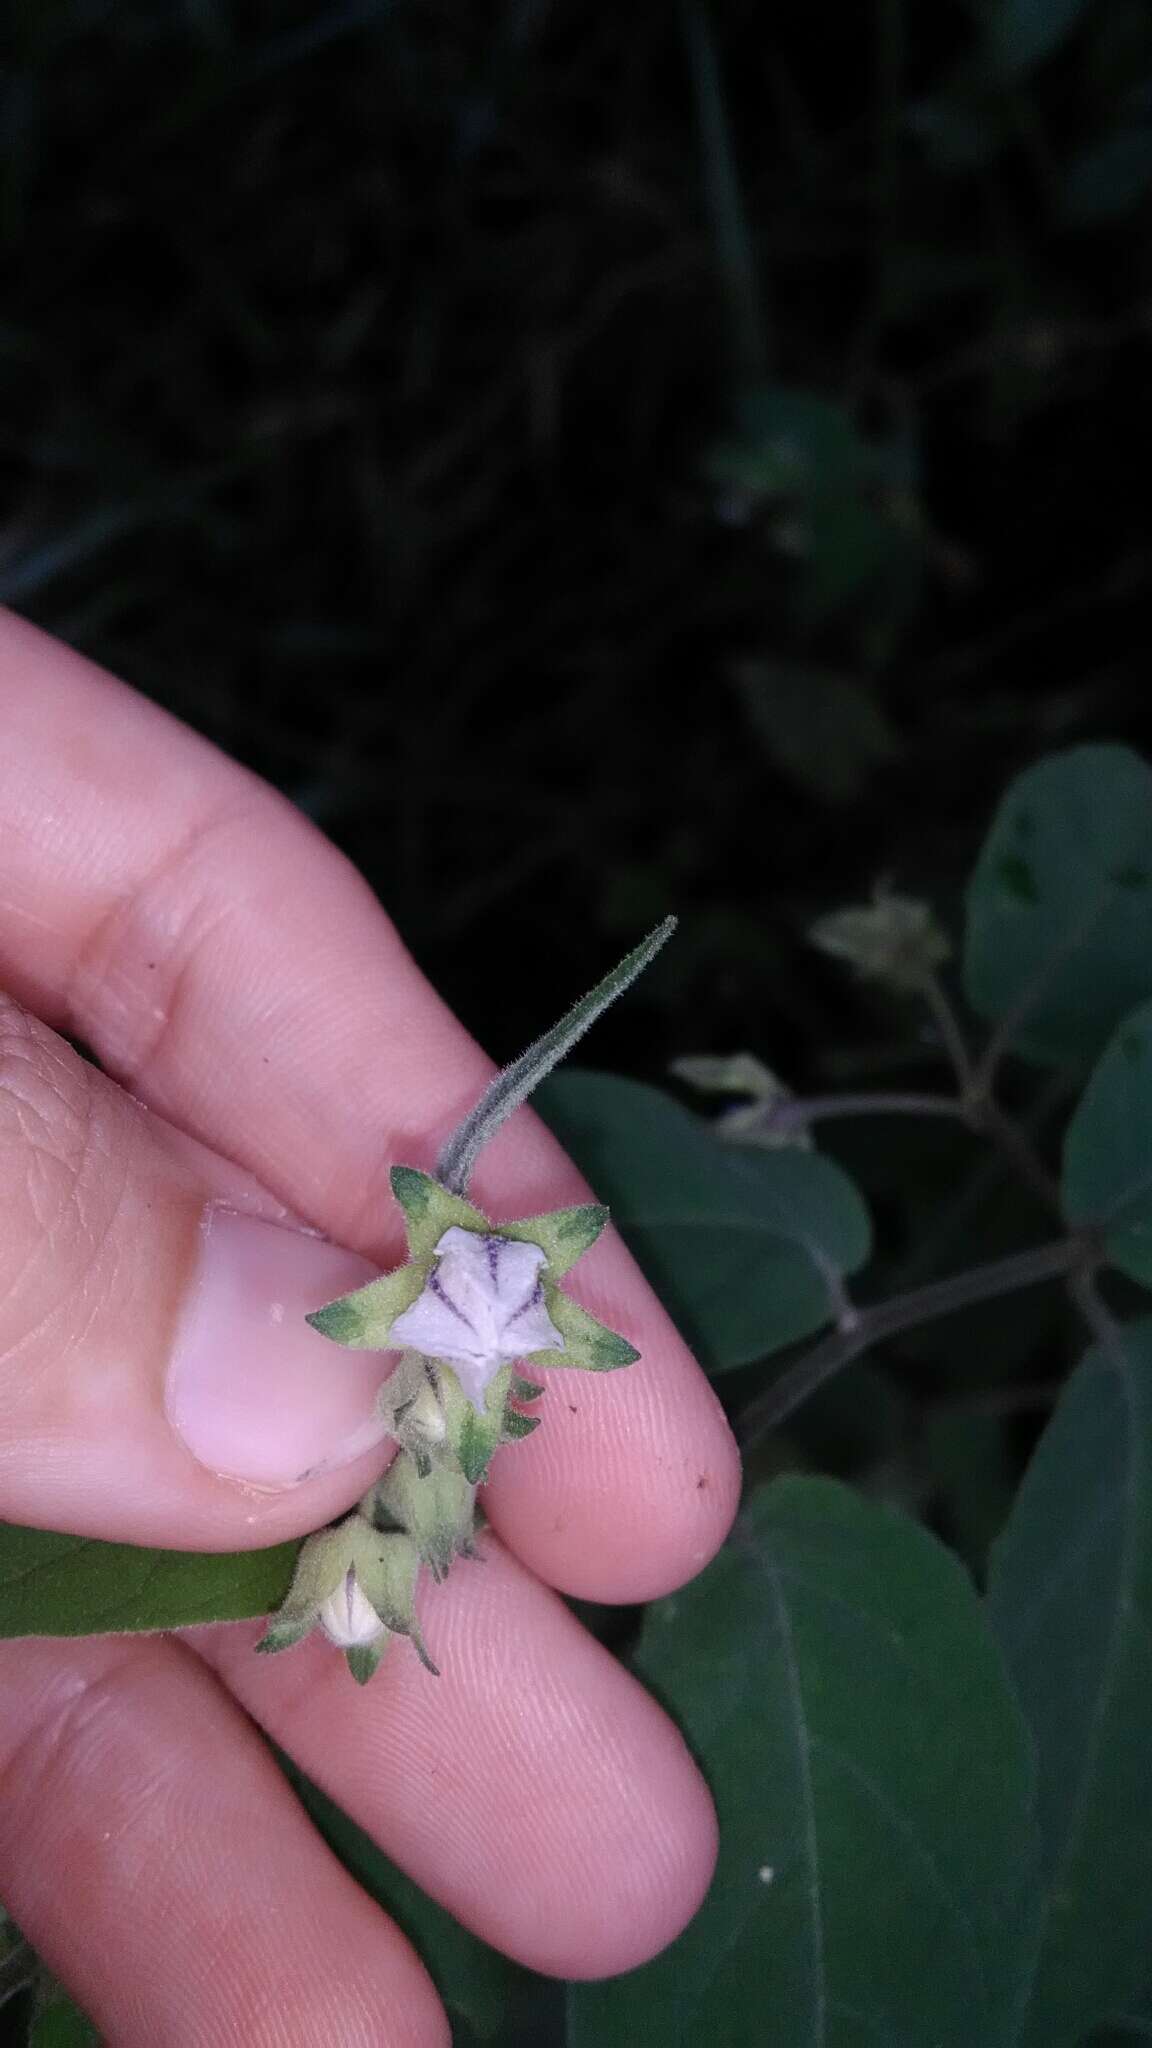 Image de Solanum didymum Dun.